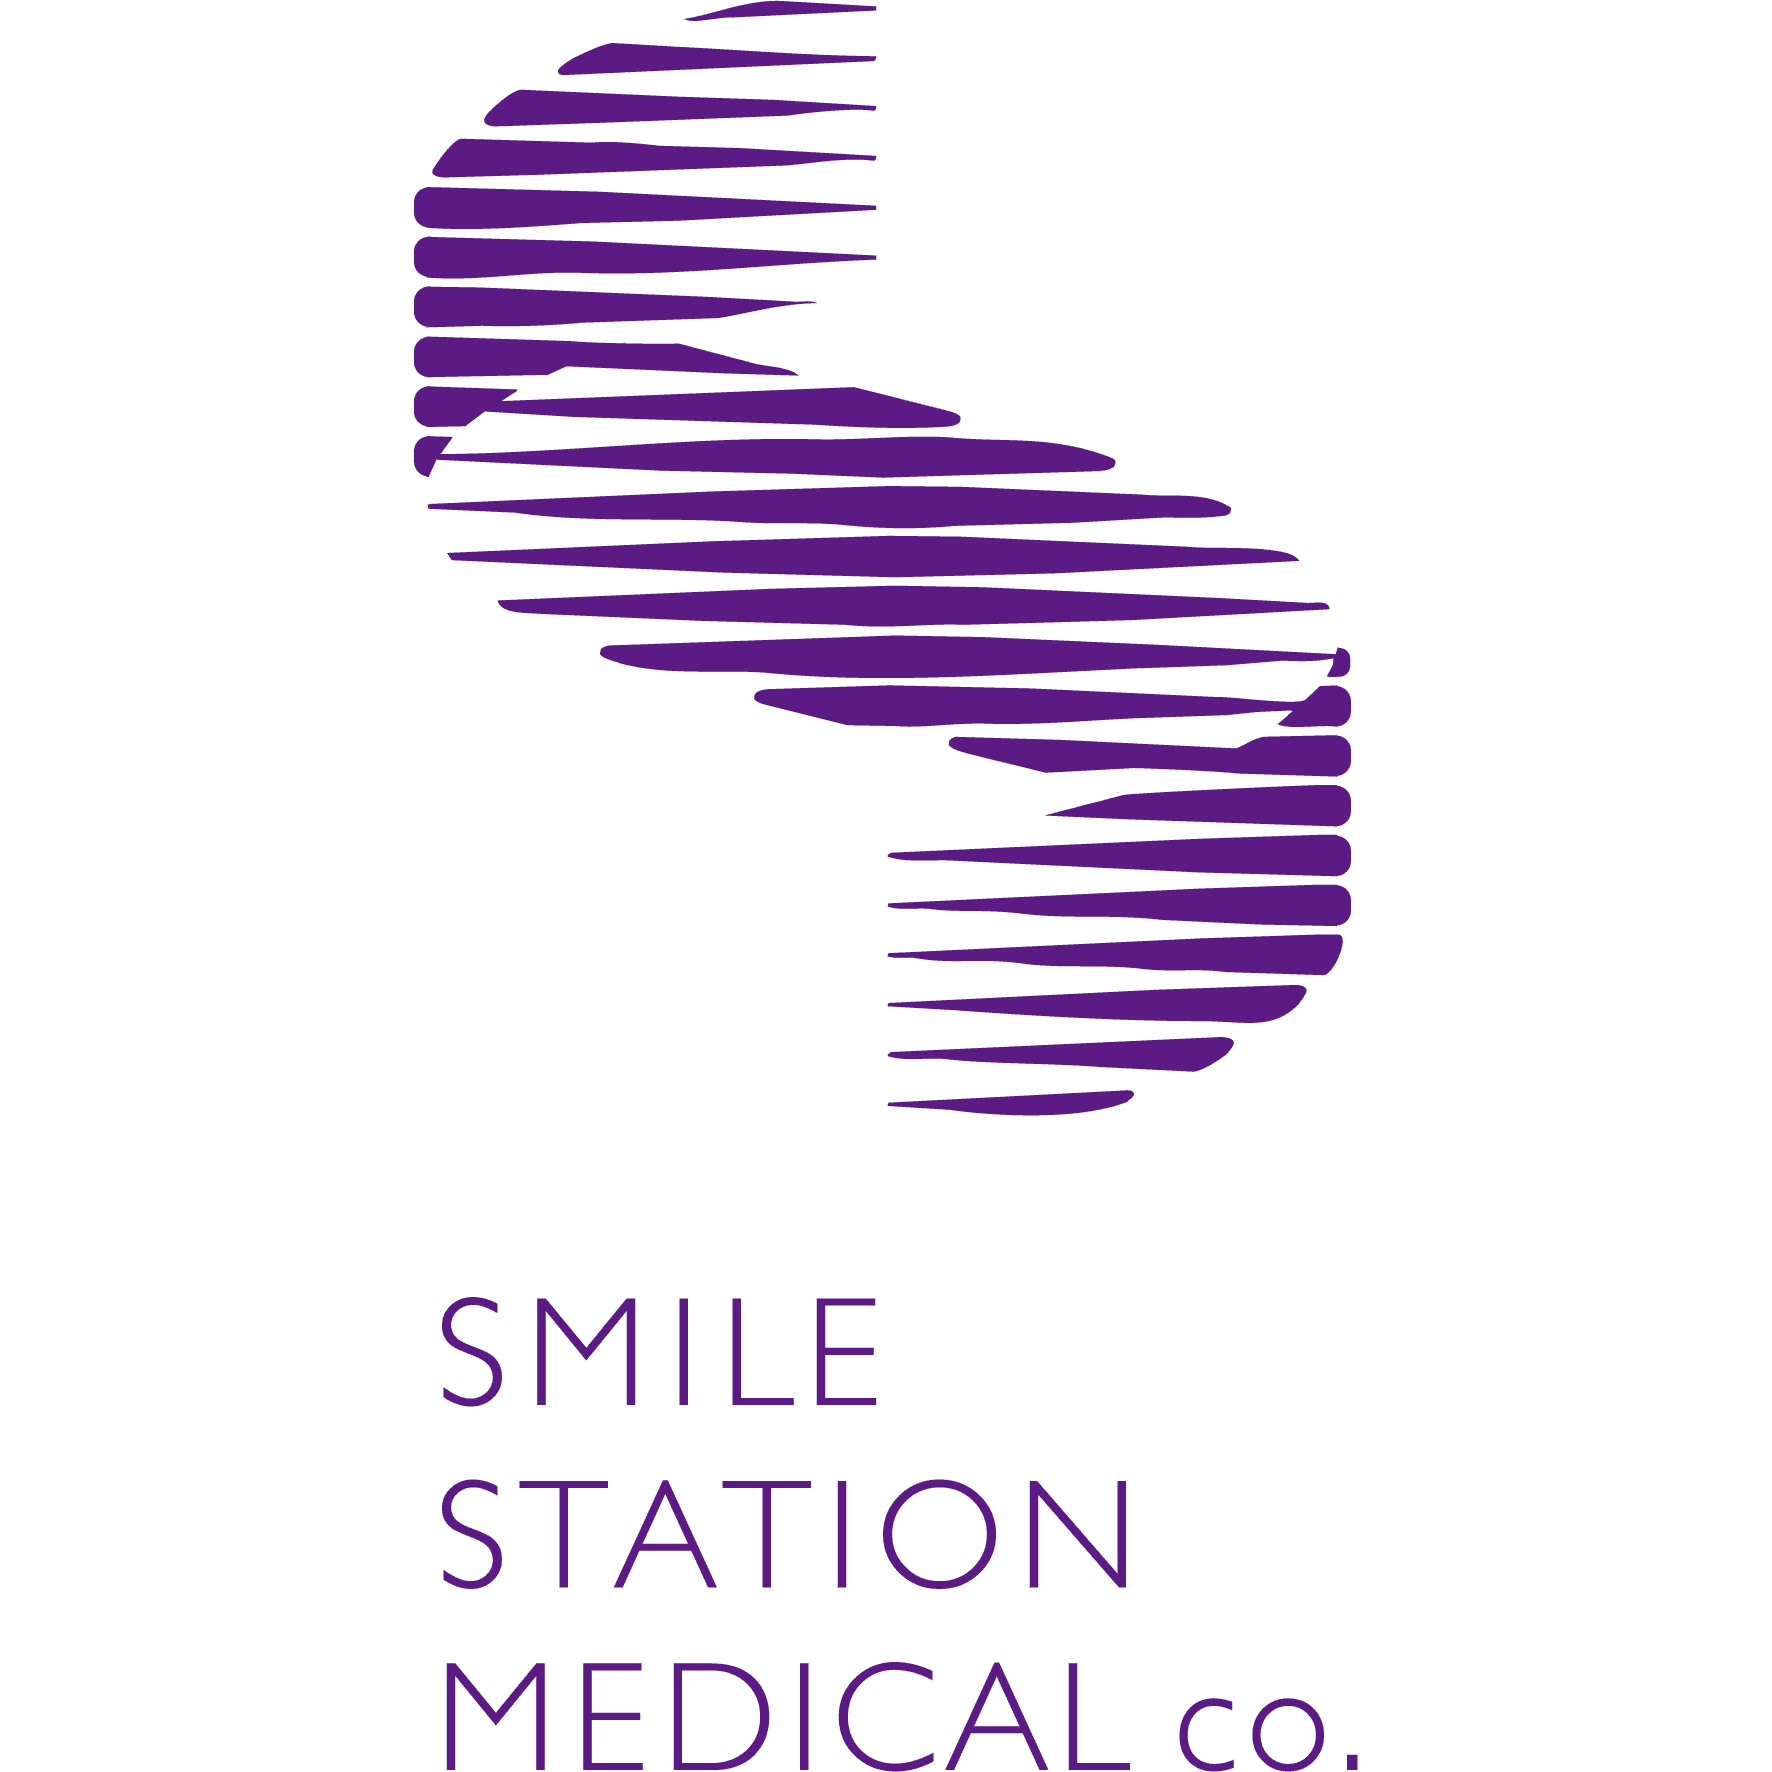 医療法人社団スマイルステーション 高輪矯正歯科医院のロゴ画像